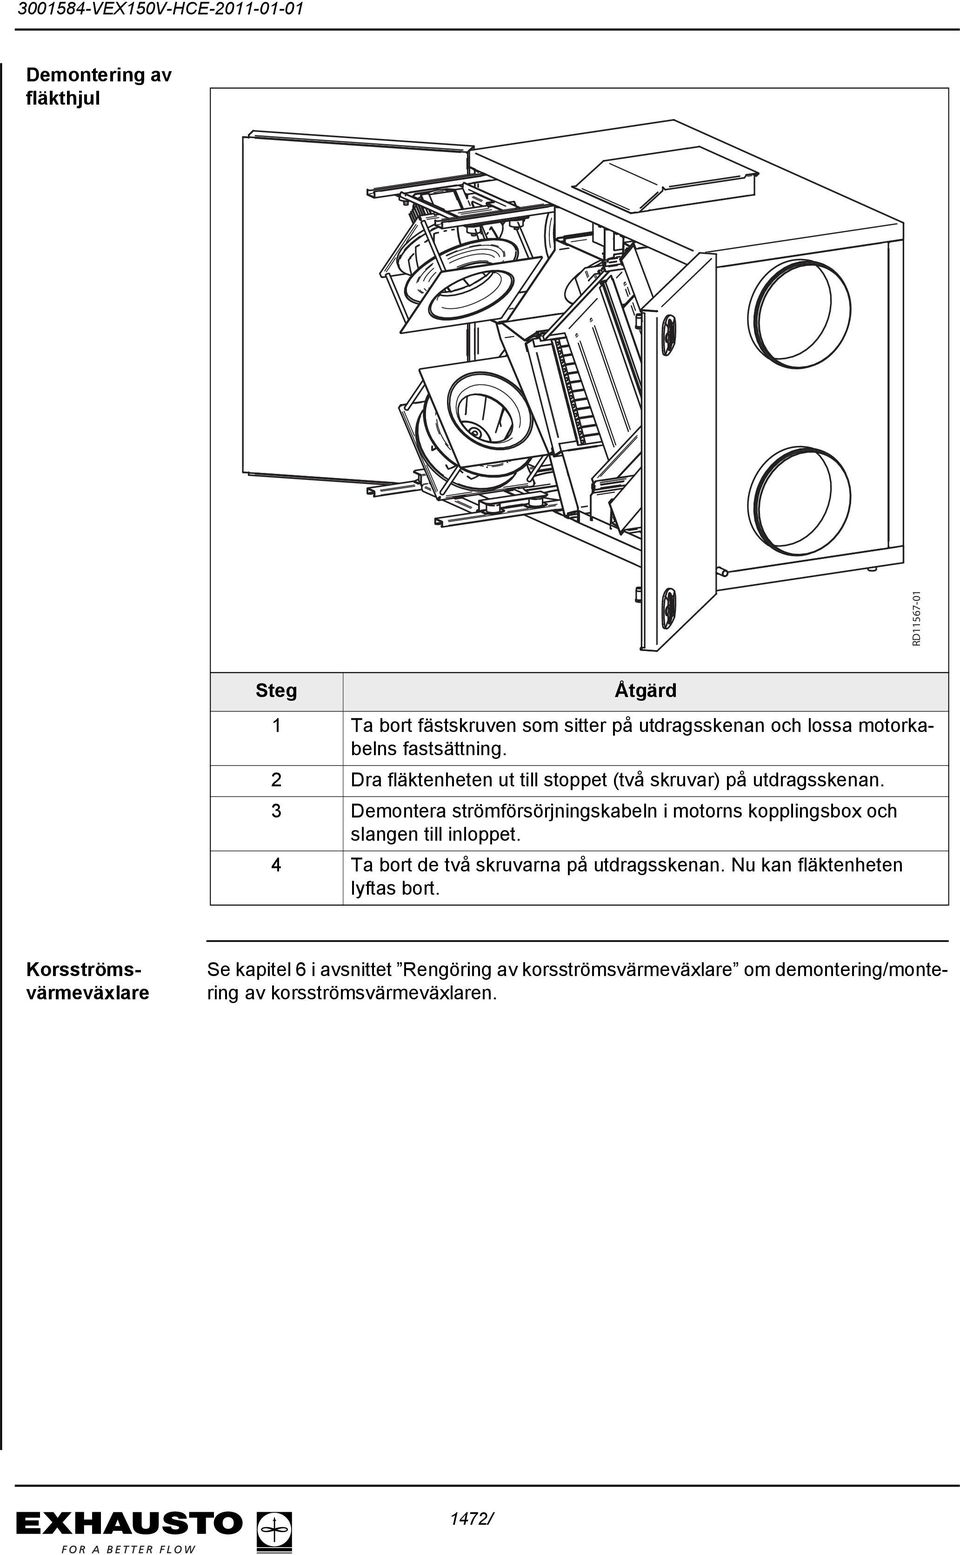 3 Demontera strömförsörjningskabeln i motorns kopplingsbox och slangen till inloppet.